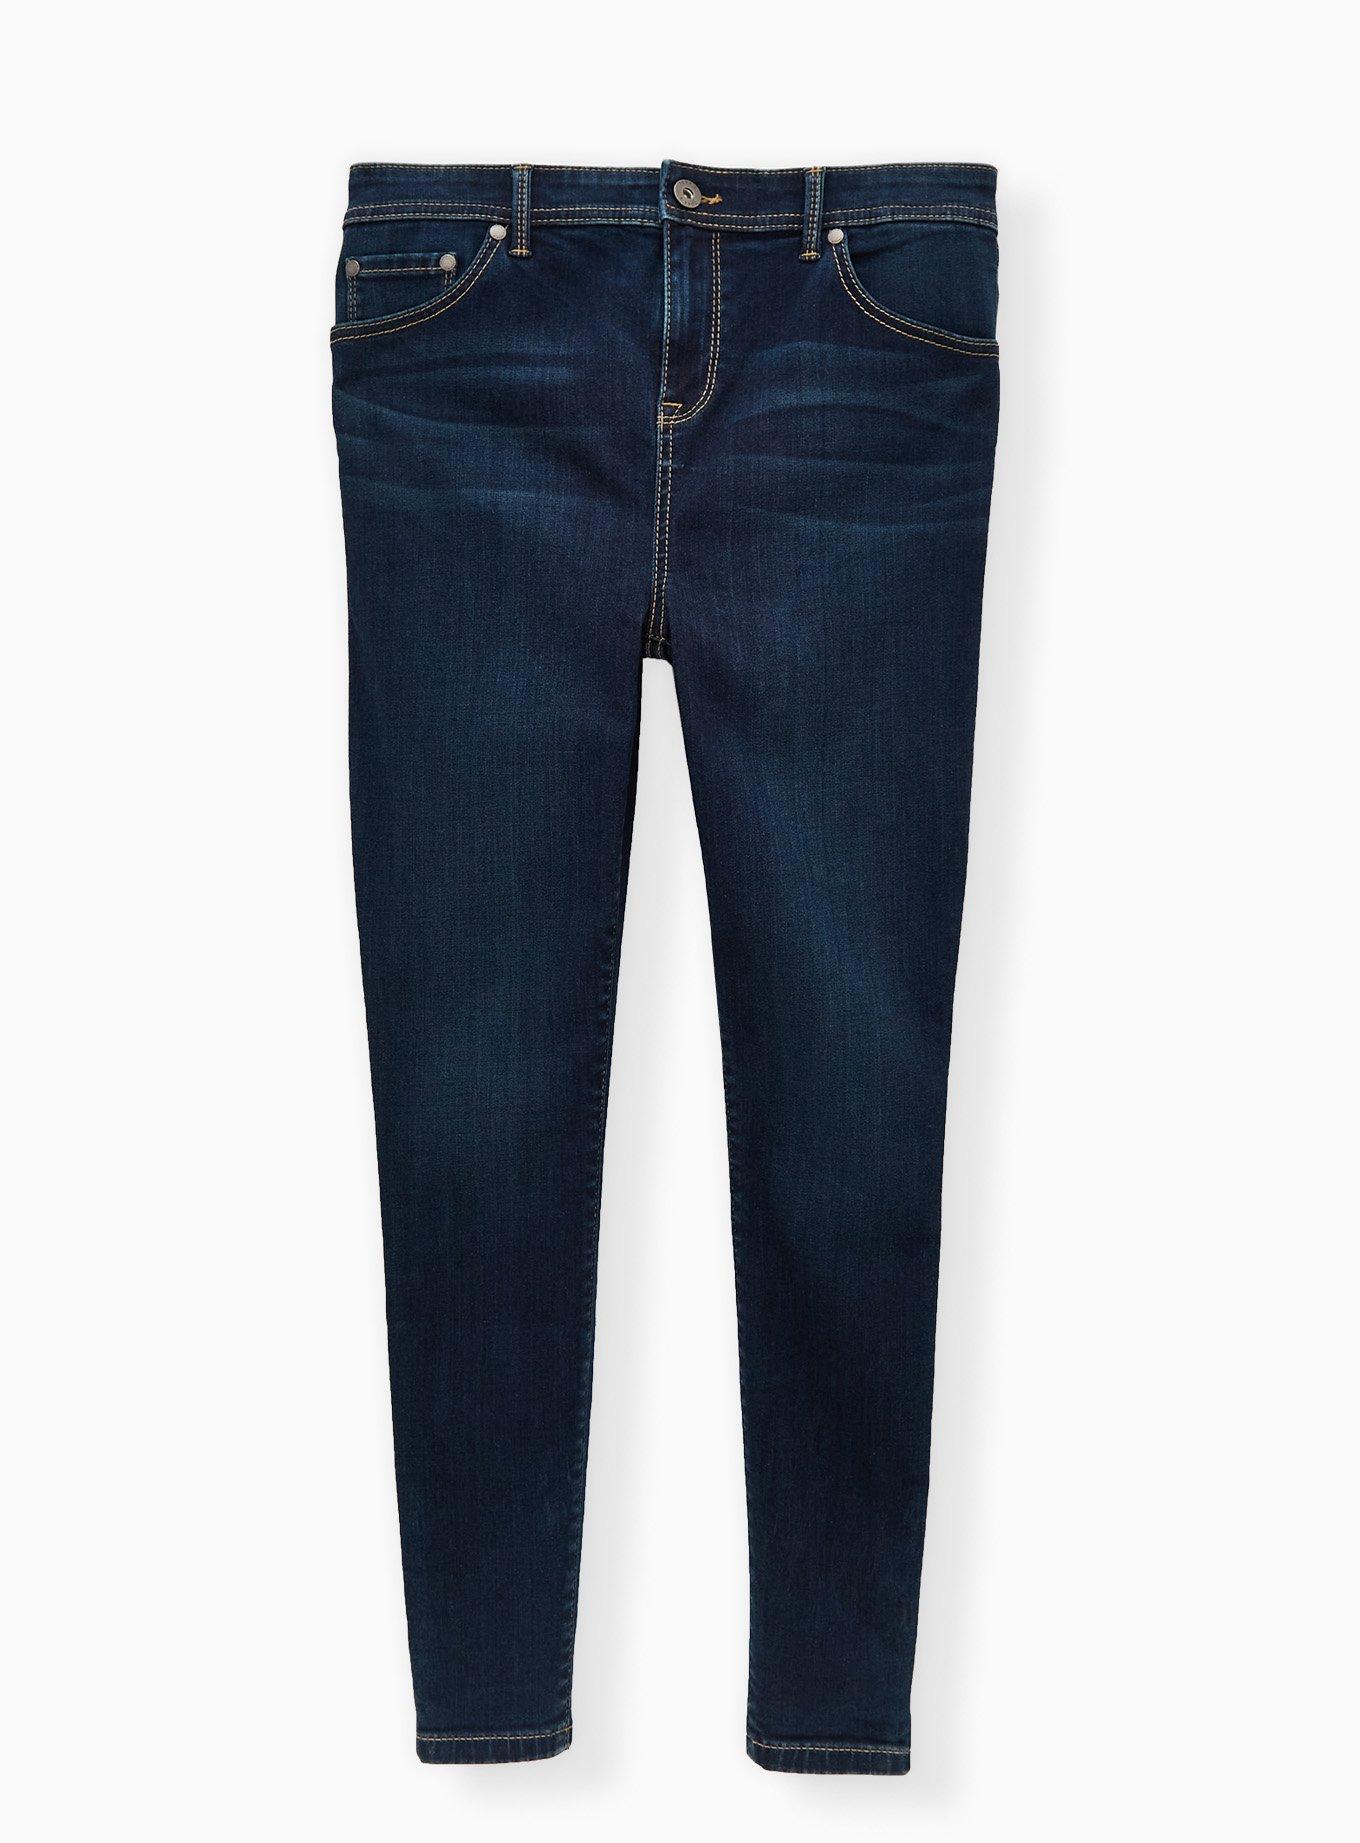 Vintage Arizona Jeans Co. Womens Camo Capris Pants Size 3 Flat Front Bottom  Tie 